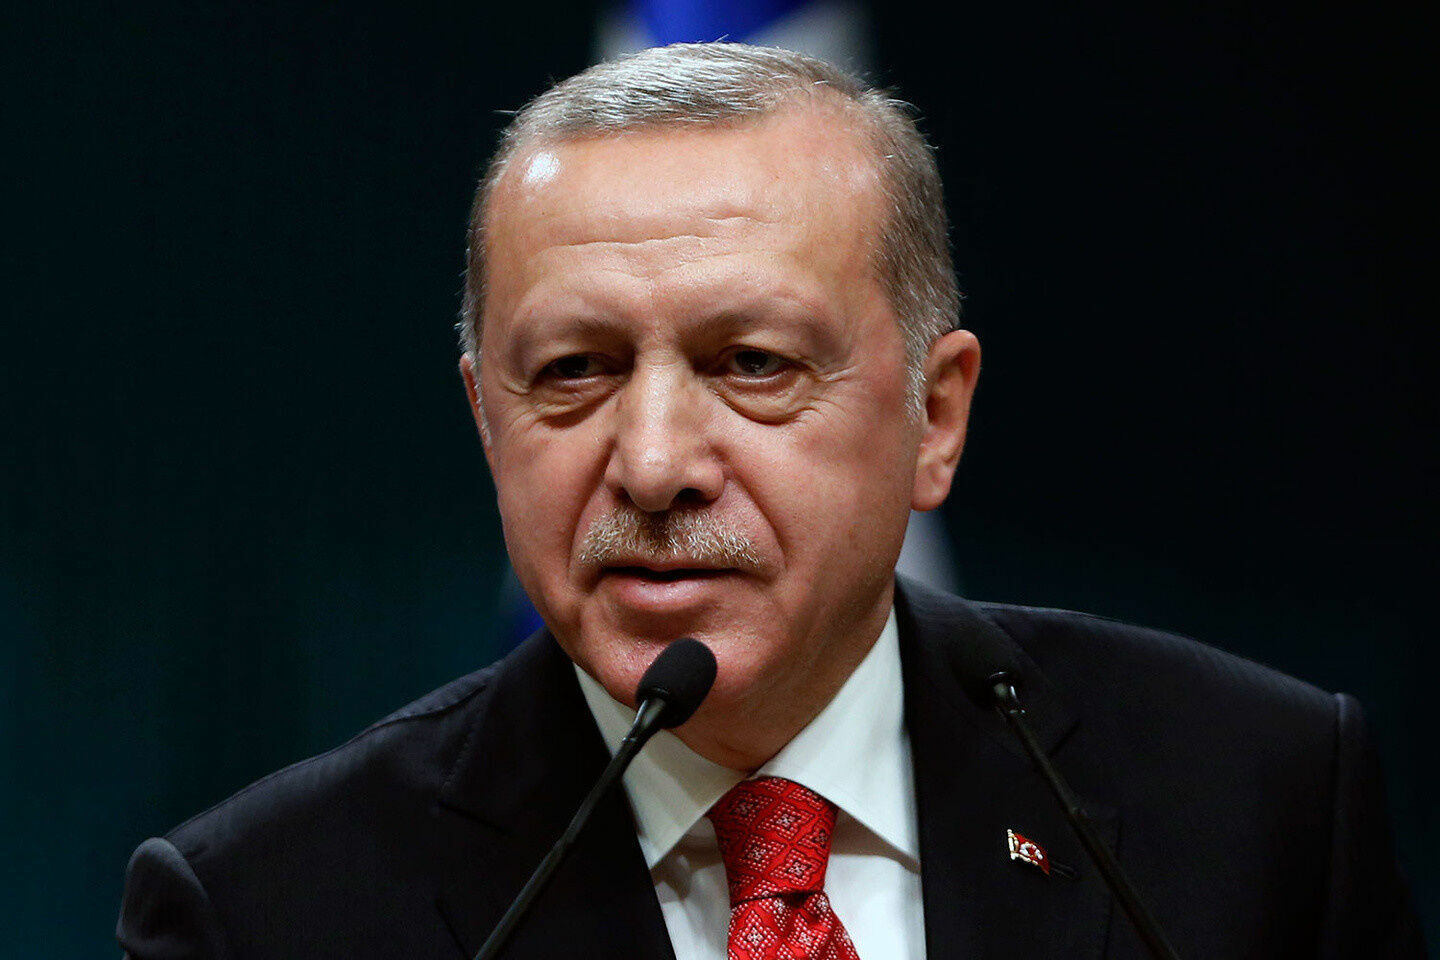 Эрдоган: Турция продолжит борьбу с «лживыми» обвинениями в геноциде армян